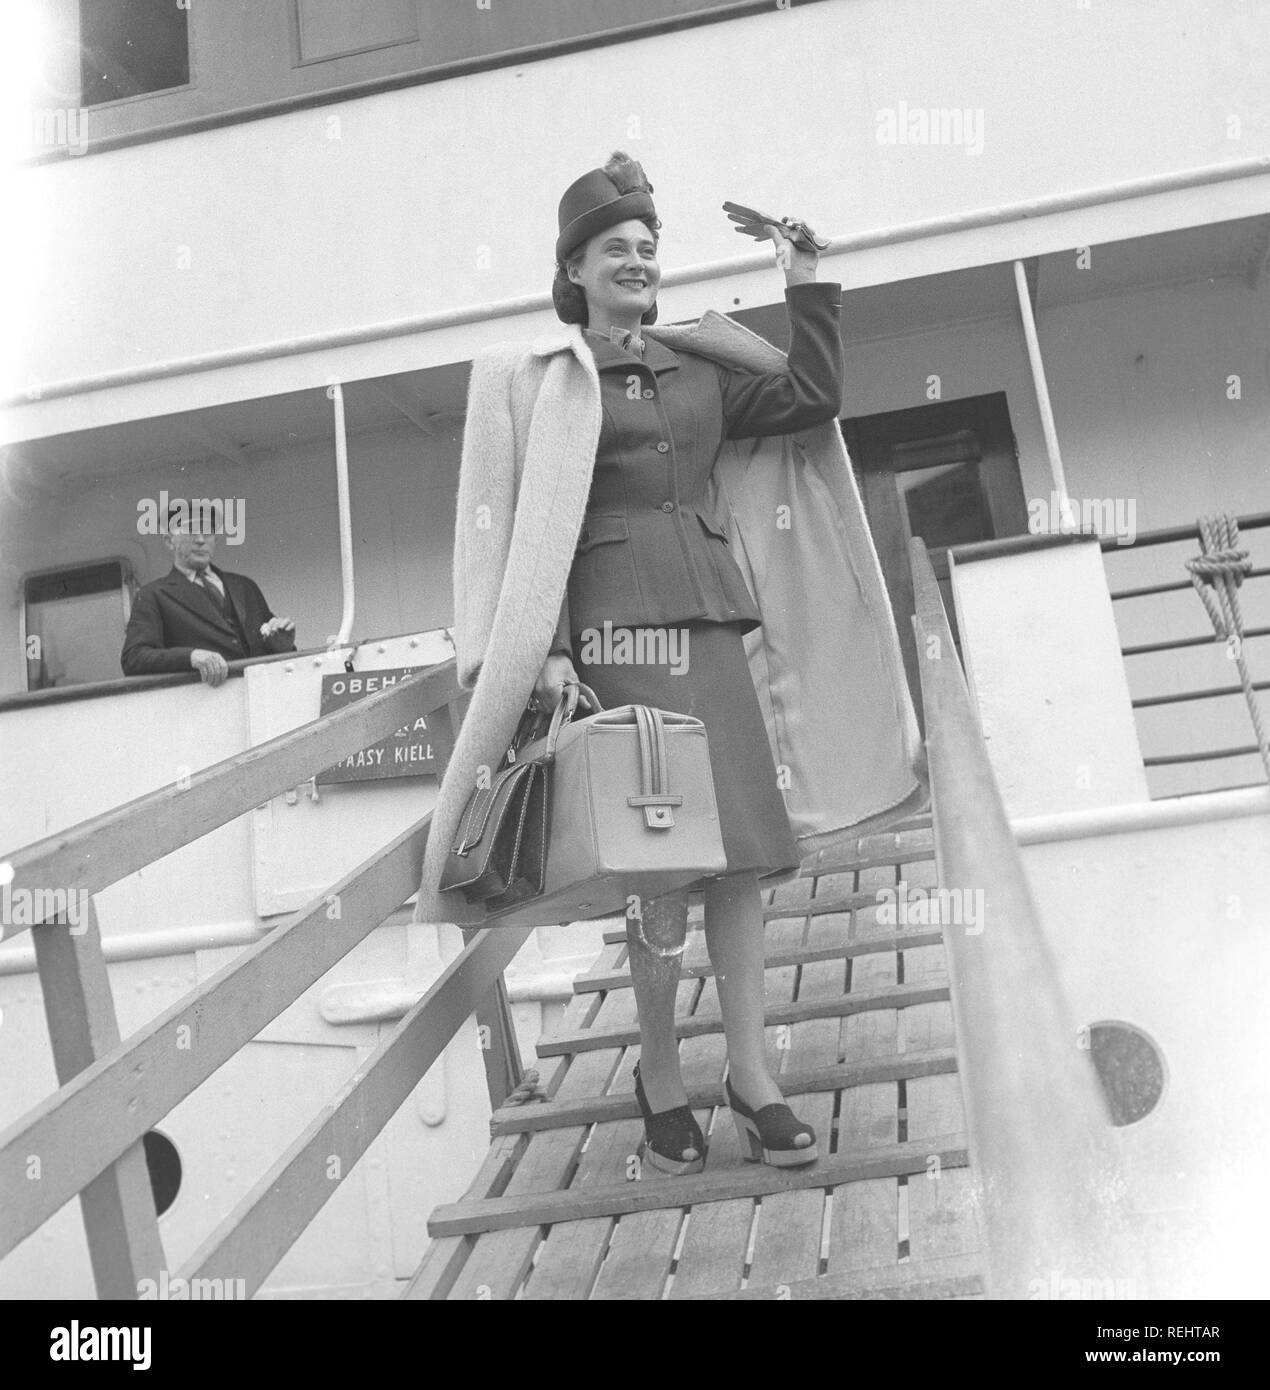 Le donne della moda nel 1940s. Una giovane donna in un tipico degli anni quaranta giacca e gonna, con abbinamento di hat, calzature, guanti e borsa. Ella le onde a qualcuno in attesa di lei sulla banchina quando arriva dopo un viaggio con una nave passeggeri. Foto Kristoffersson Ref V77-1. La Svezia 1947 Foto Stock